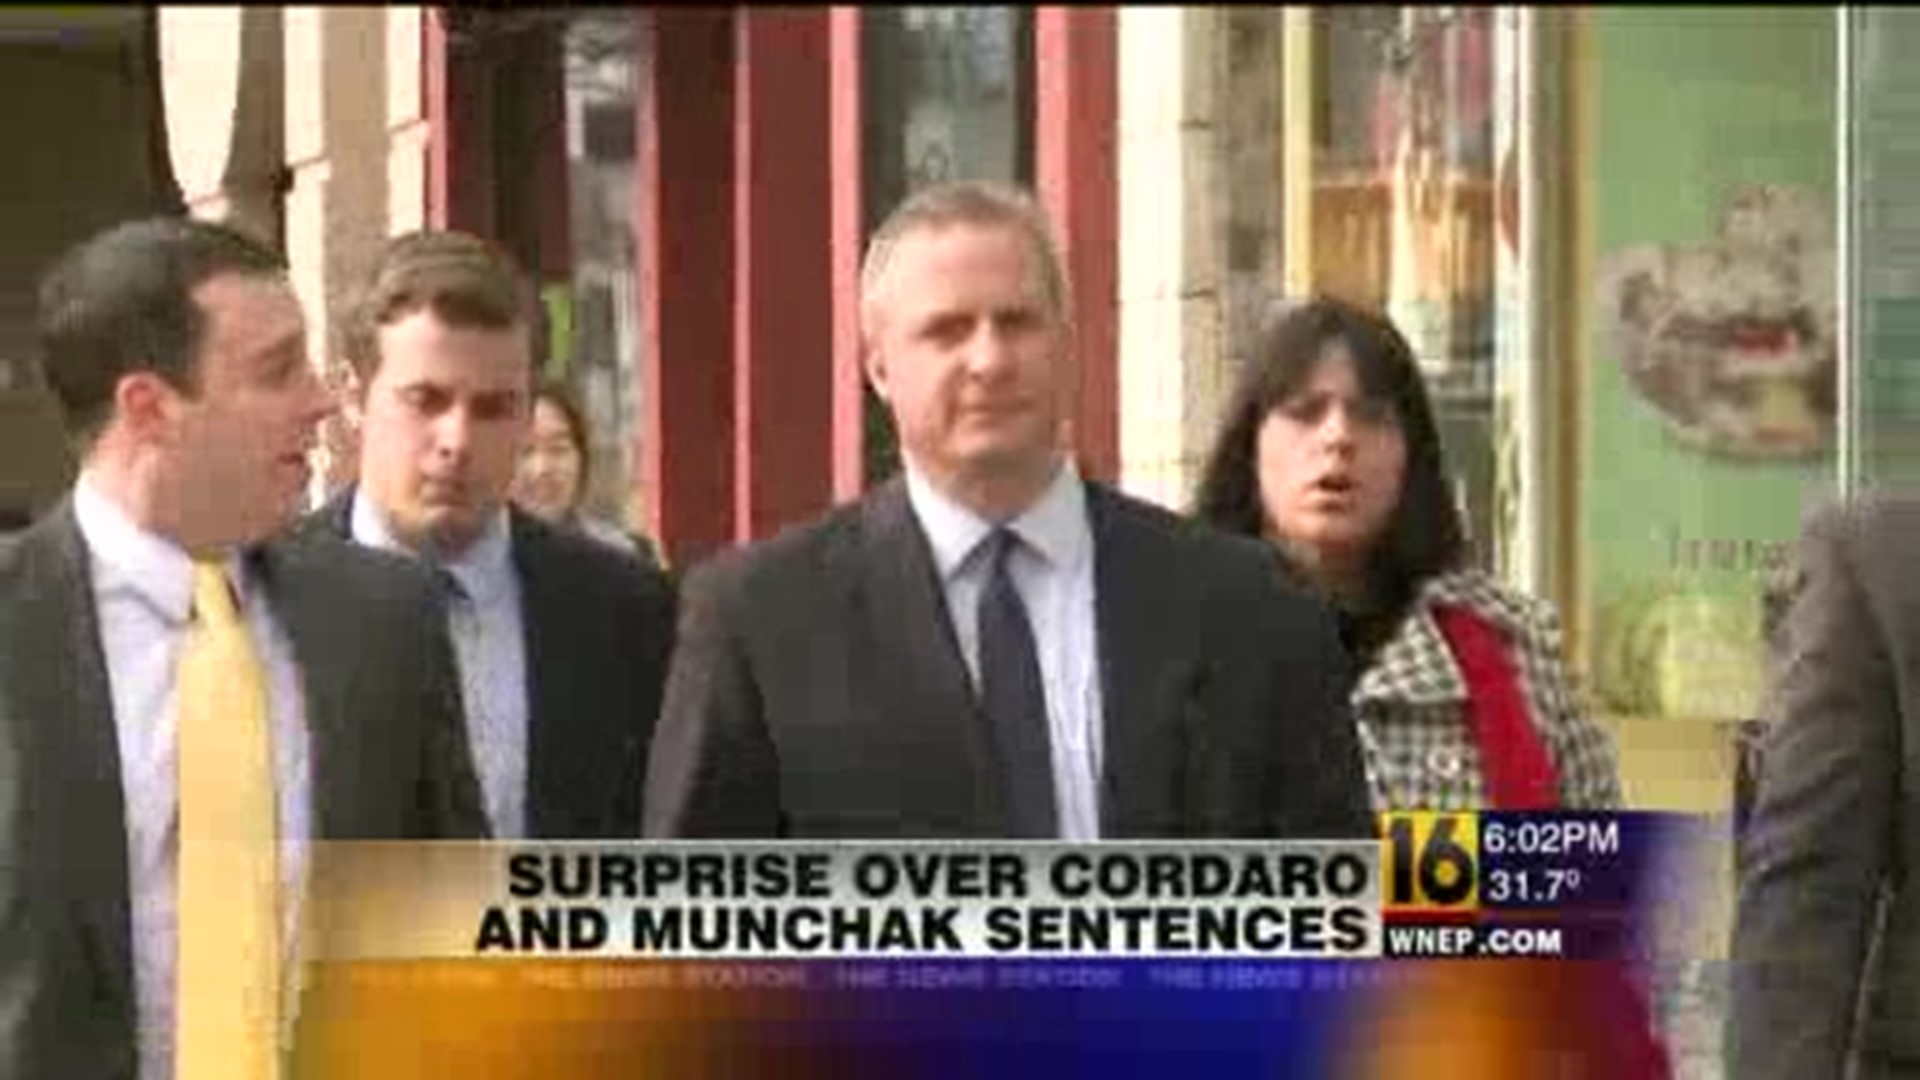 Reaction to Coradaro, Munchak Sentencing